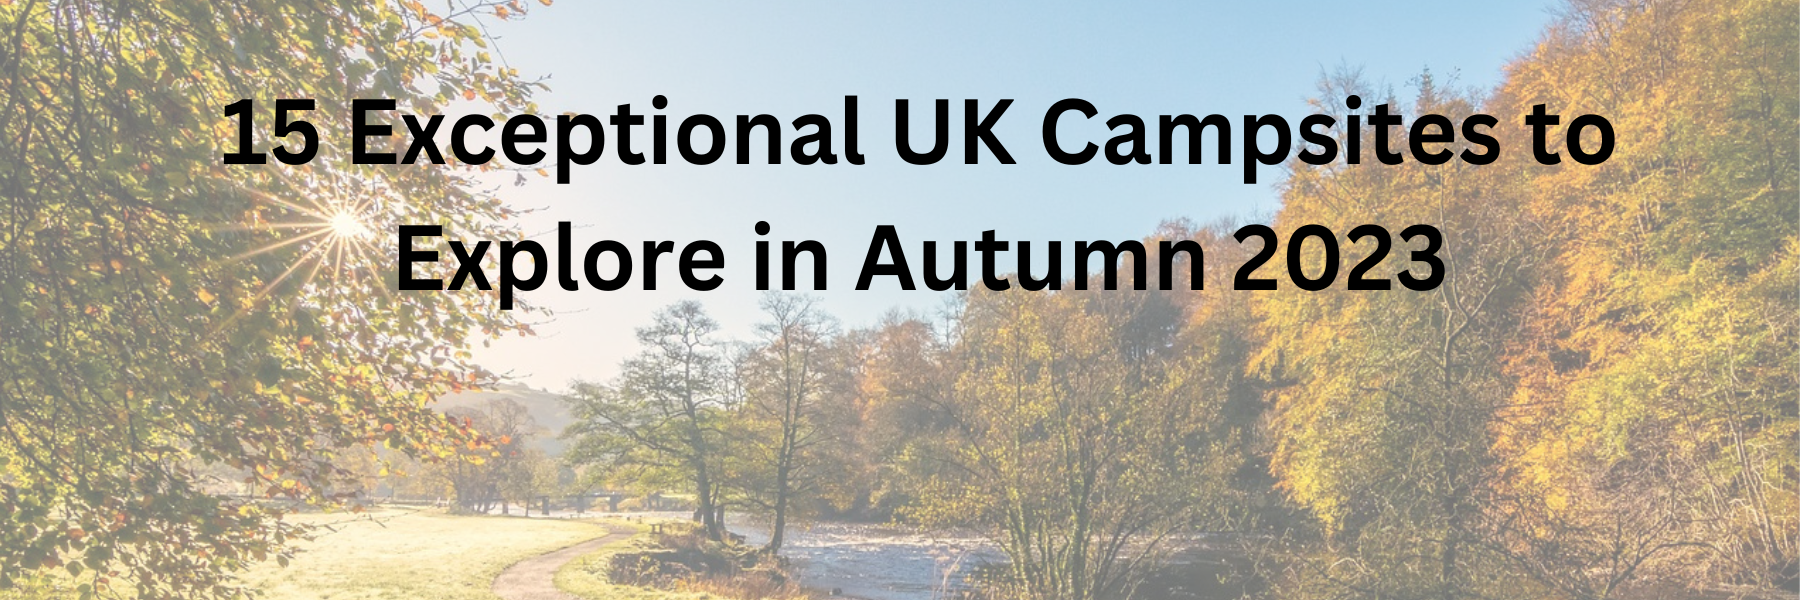 15 Exceptional UK Campsites to Explore in Autumn 2023